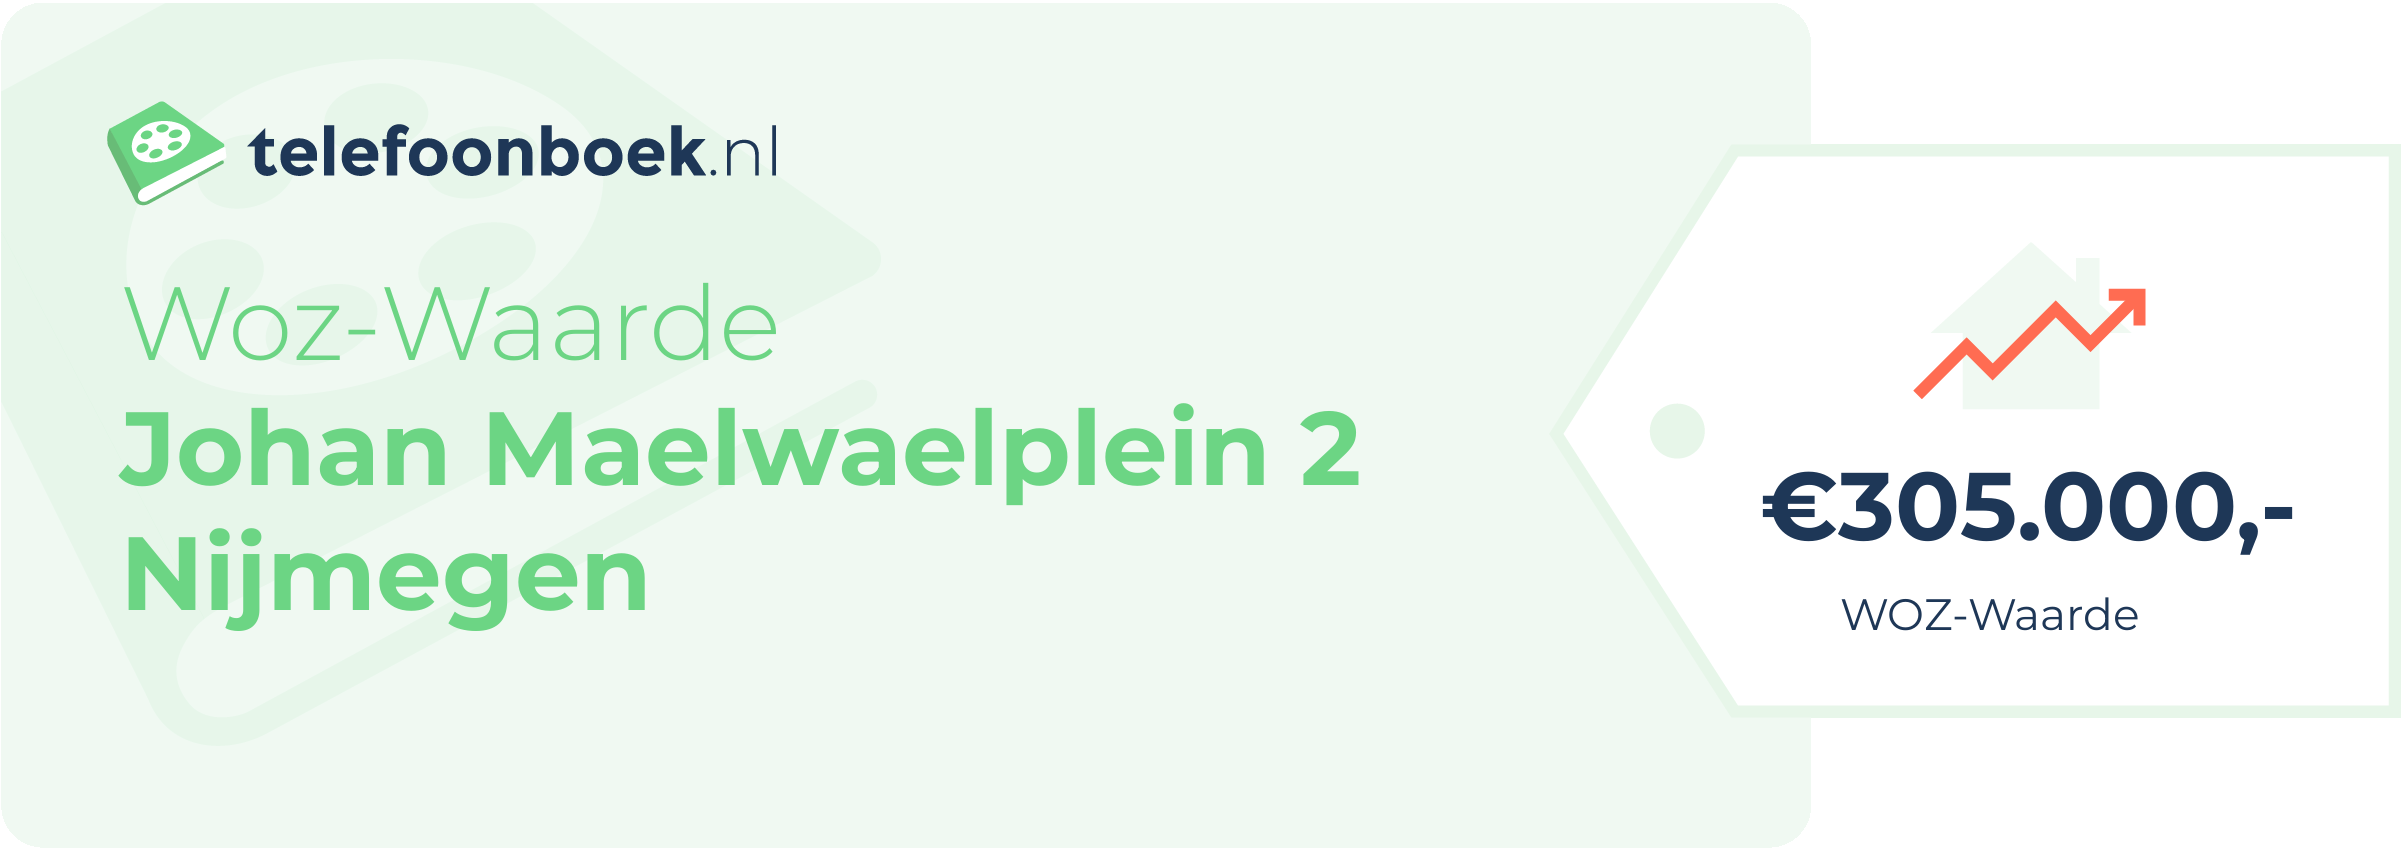 WOZ-waarde Johan Maelwaelplein 2 Nijmegen